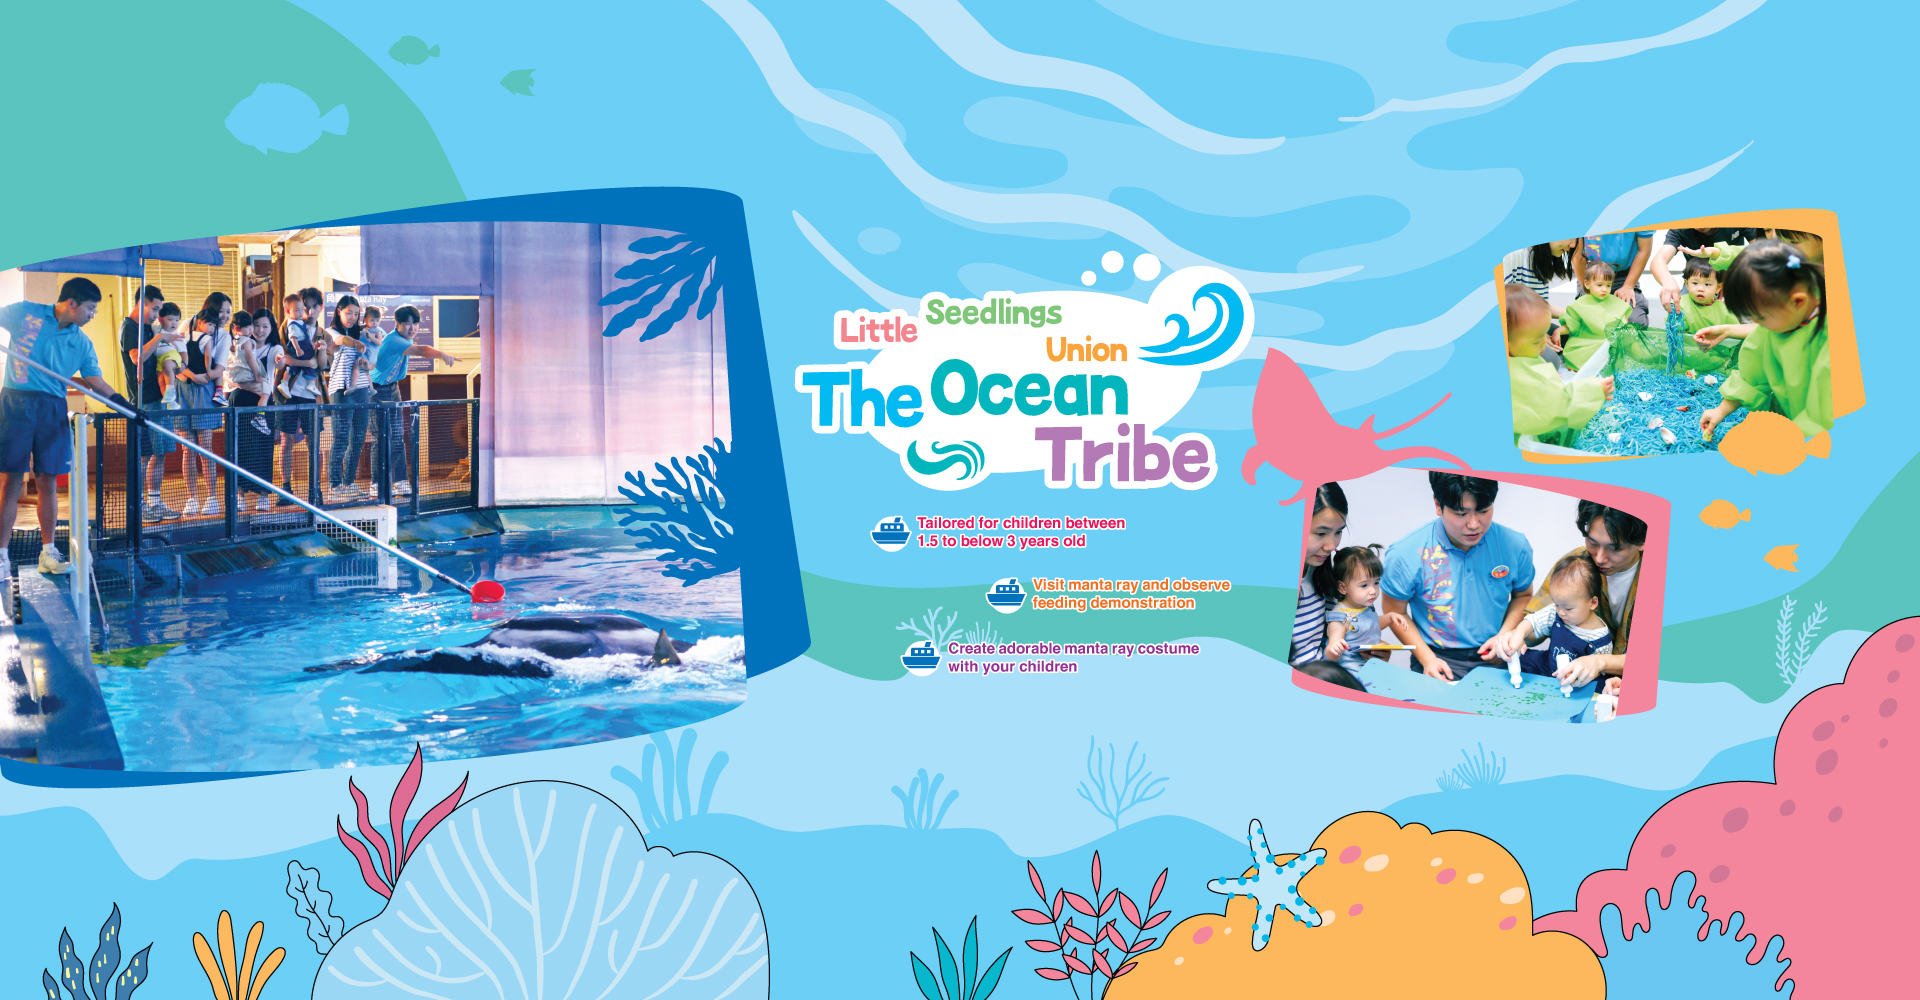 https://media.oceanpark.com.hk/files/s3fs-public/op-little-seedlings-union-the-ocean-tribe-innerpage-desktop-en.jpg